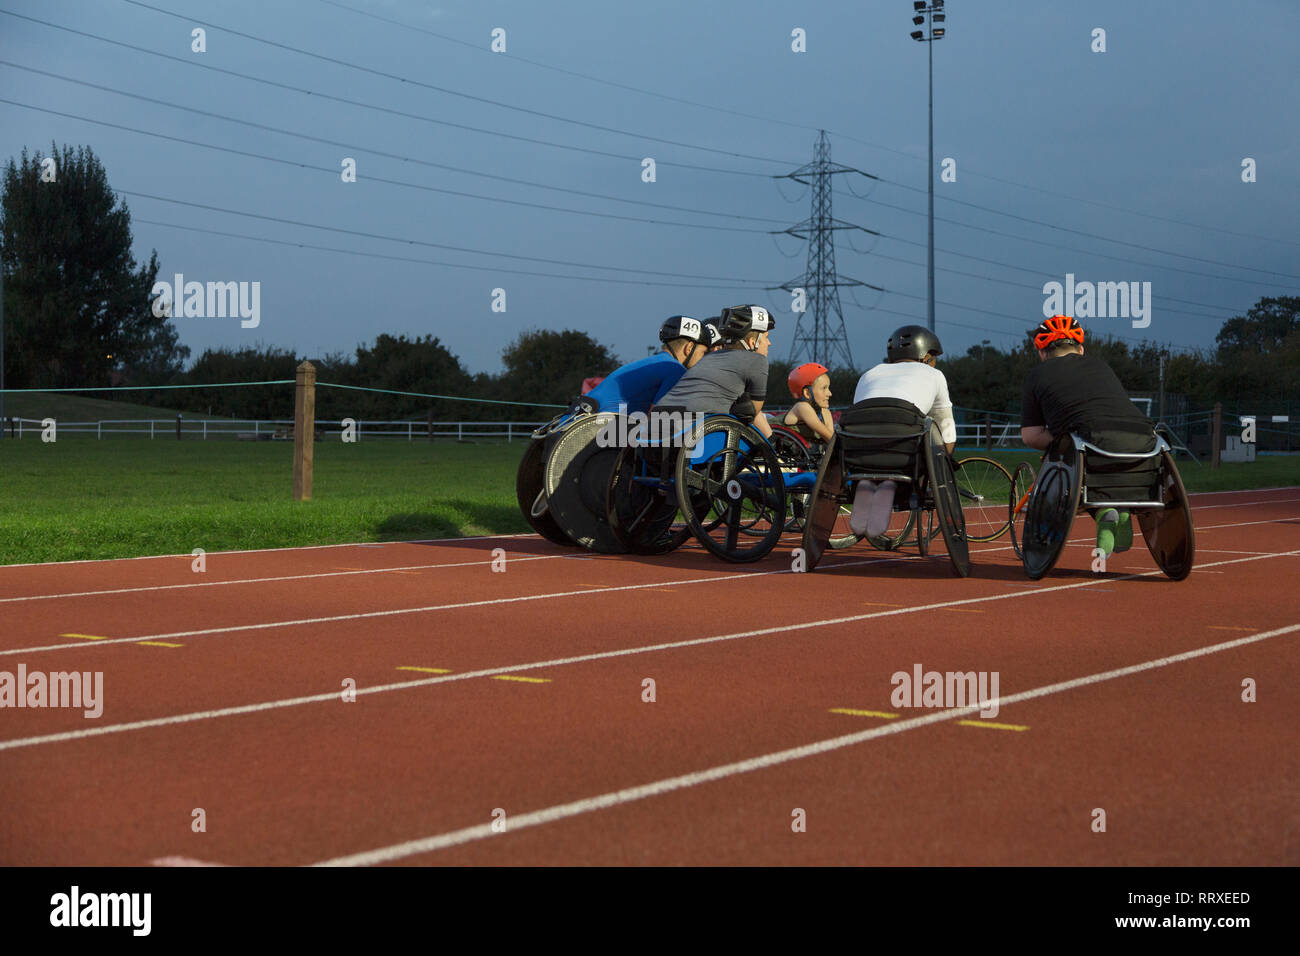 Les athlètes paraplégiques piaillent sur piste sports, la formation de course en fauteuil roulant dans la nuit Banque D'Images